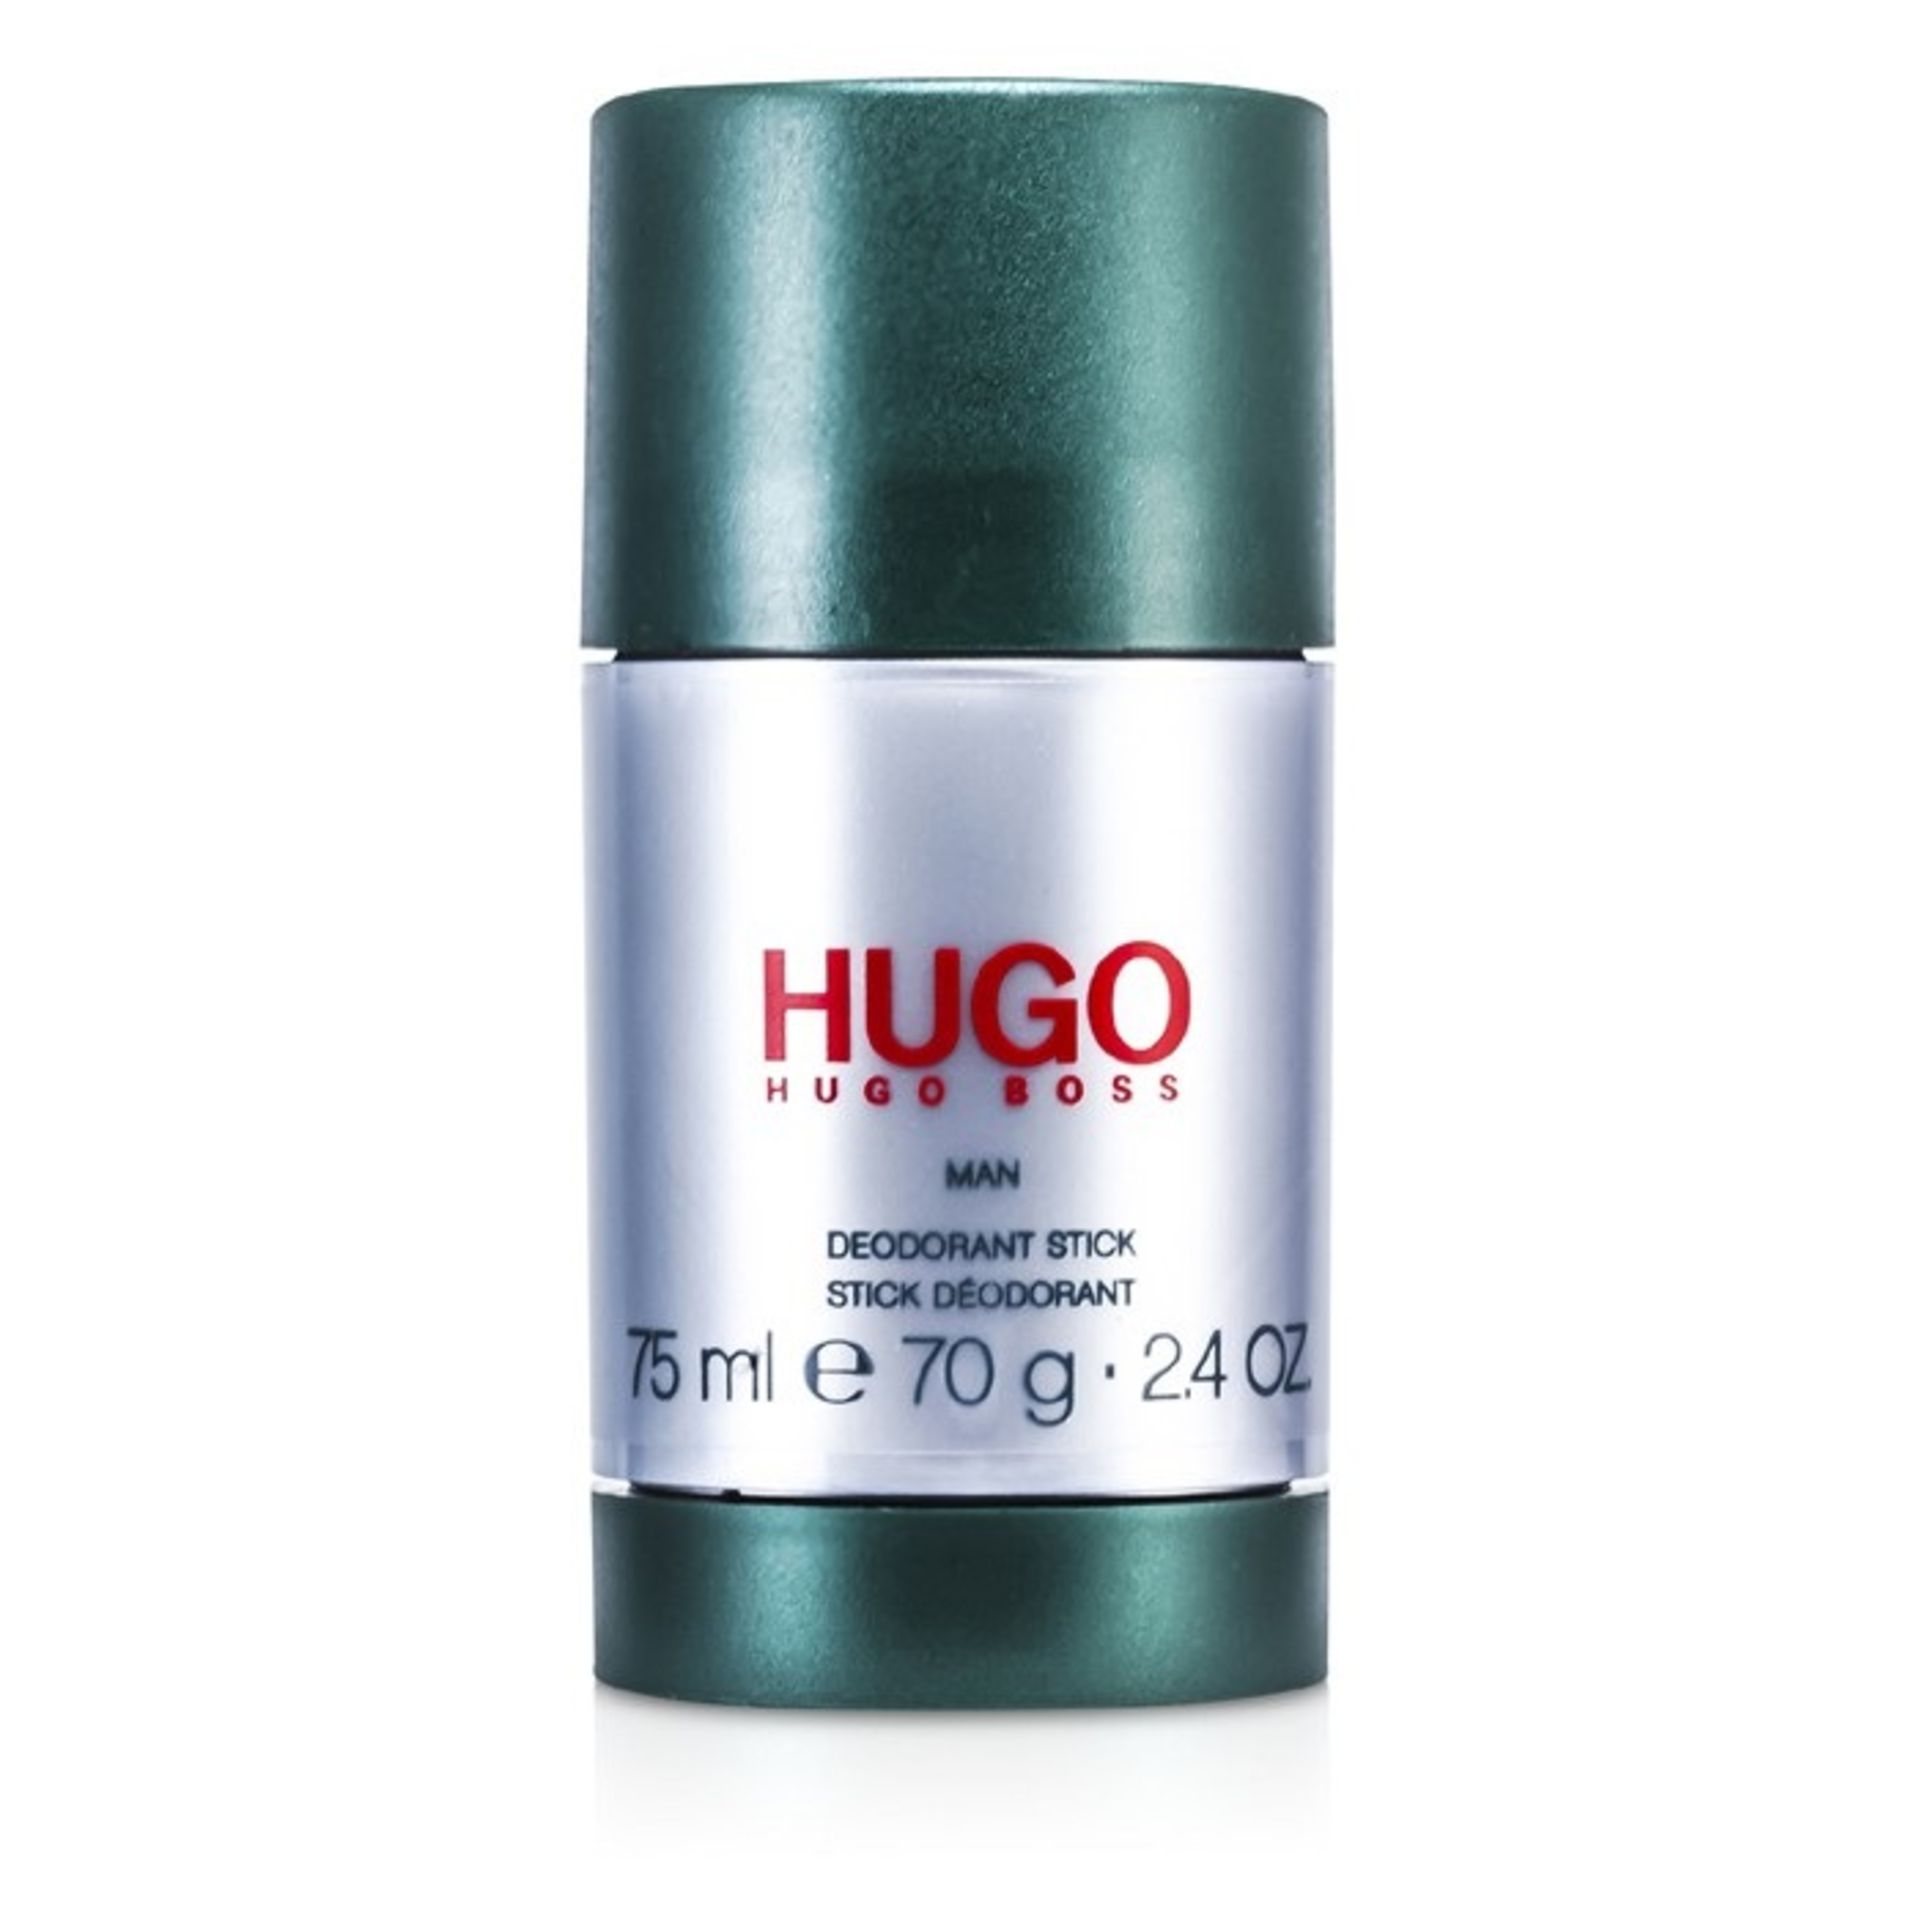 V Brand New Hugo Boss Green 75g Deodorant Stick